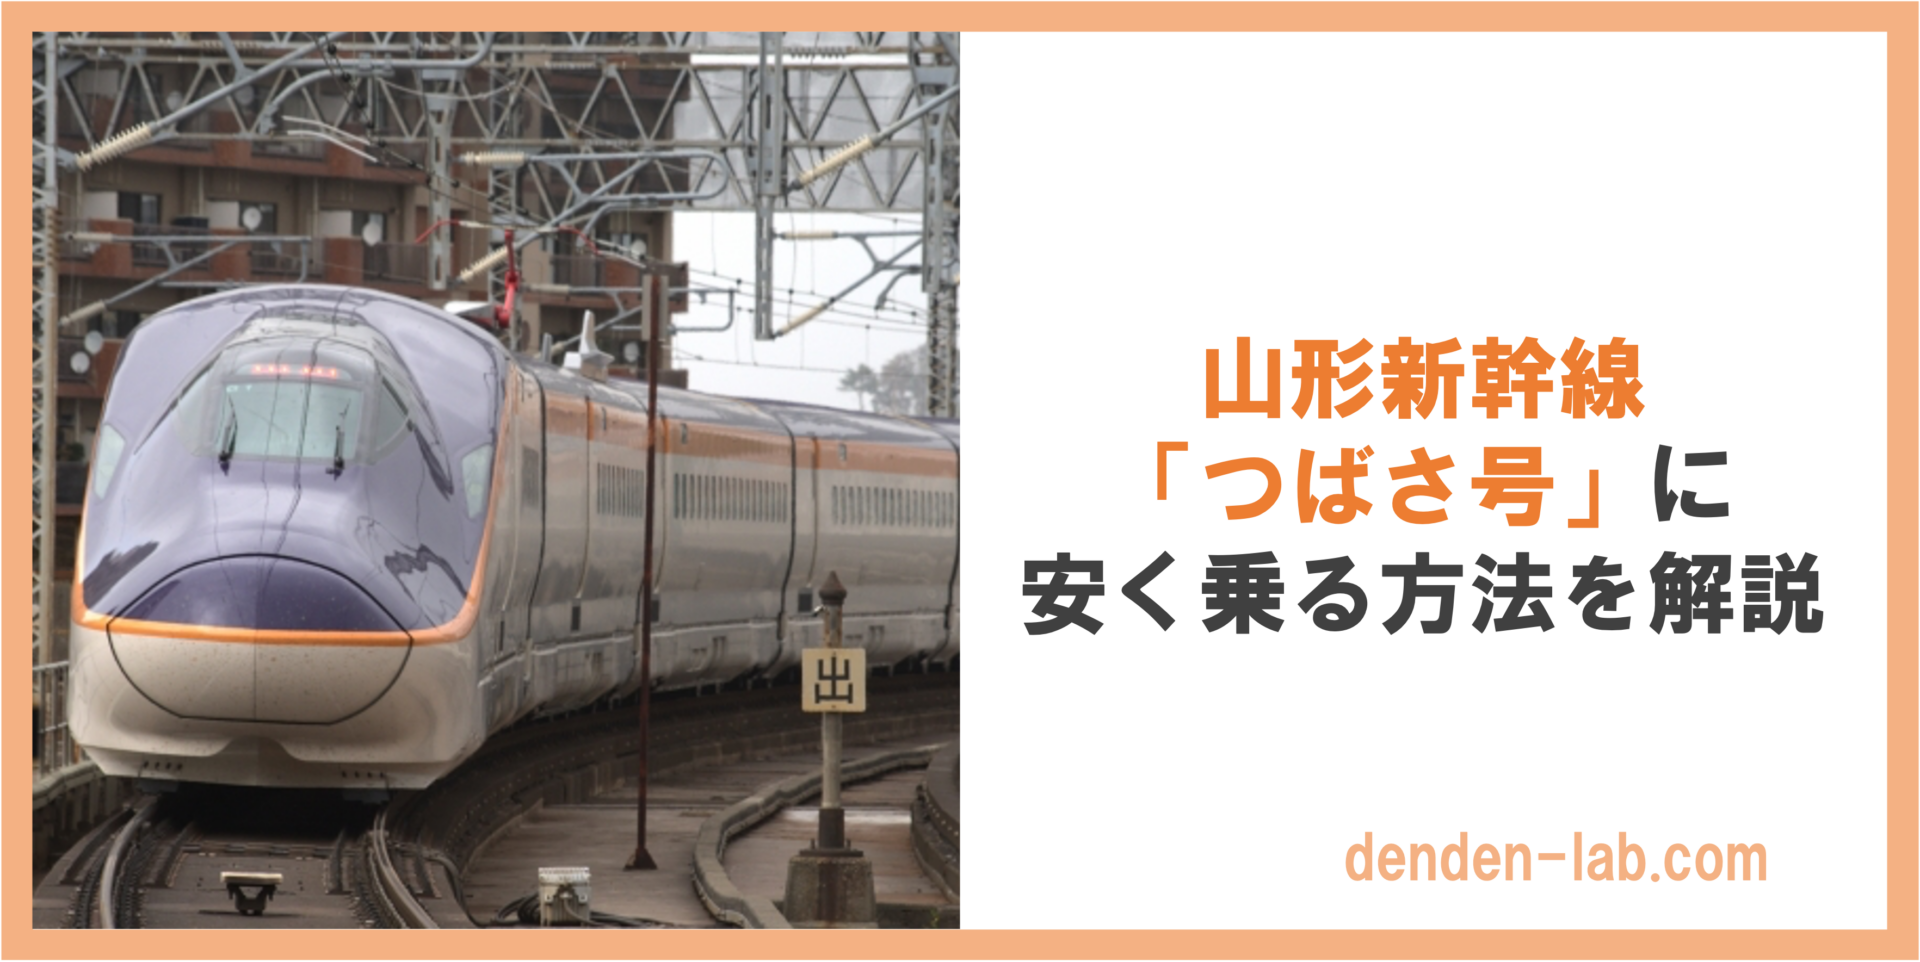 山形新幹線 「つばさ号」に 安く乗る方法を解説